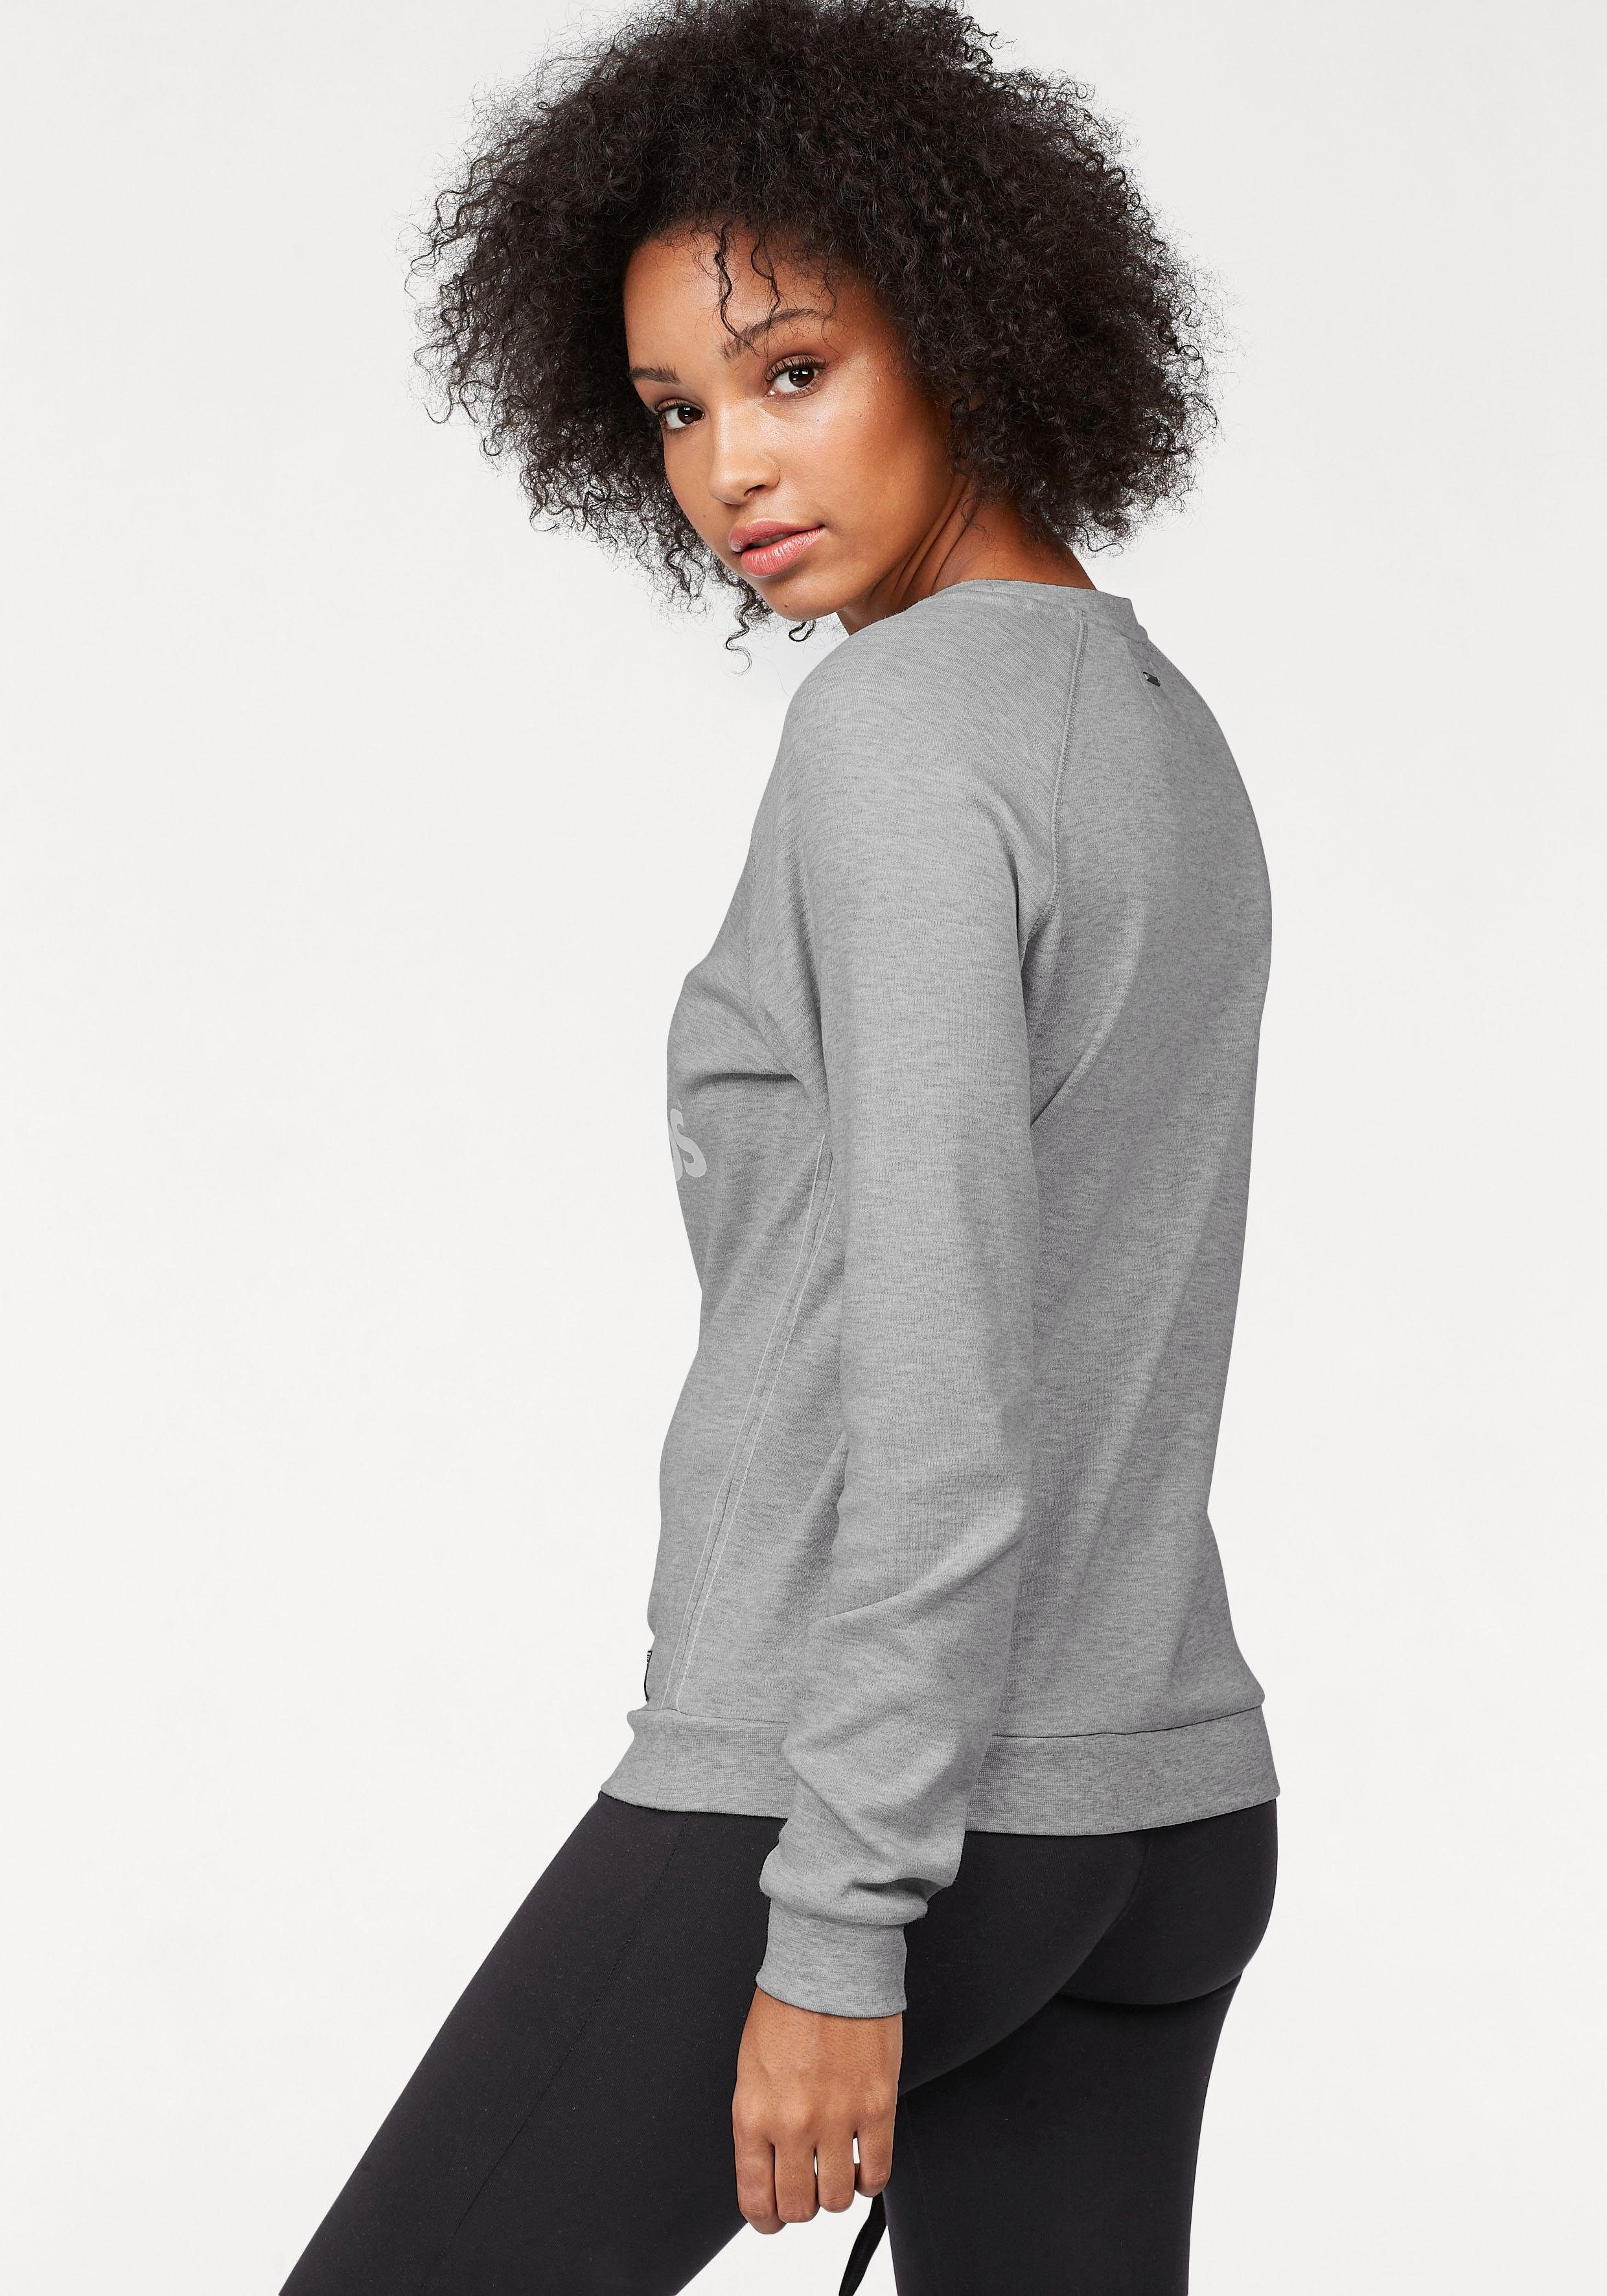 KangaROOS Sweater mit Label-Print hellgrau-meliert vorne großem